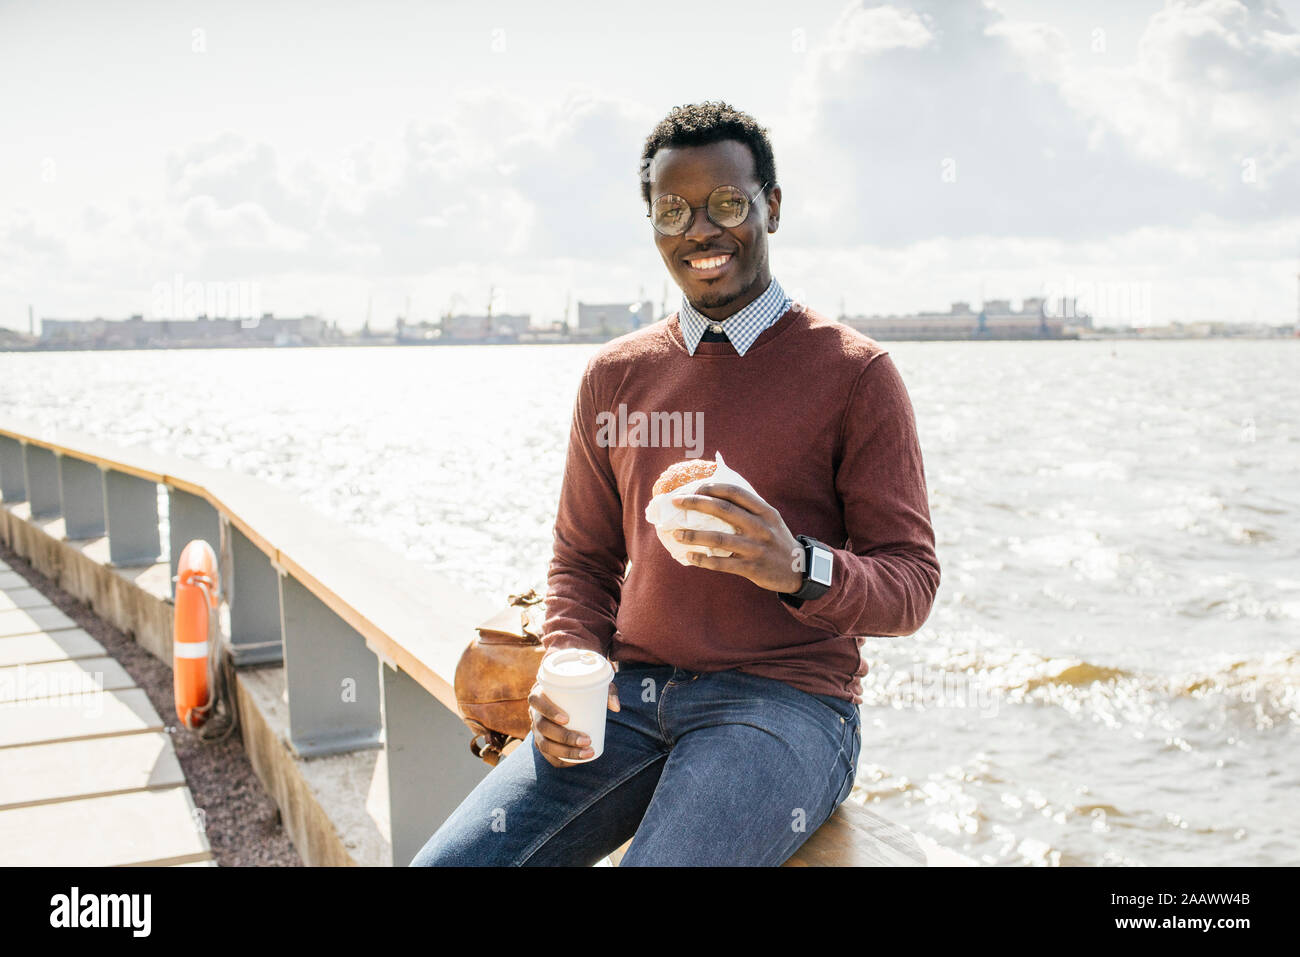 Junge Mann sitzt auf Geländer am Meer, Hamburger essen, trinken Kaffee Stockfoto